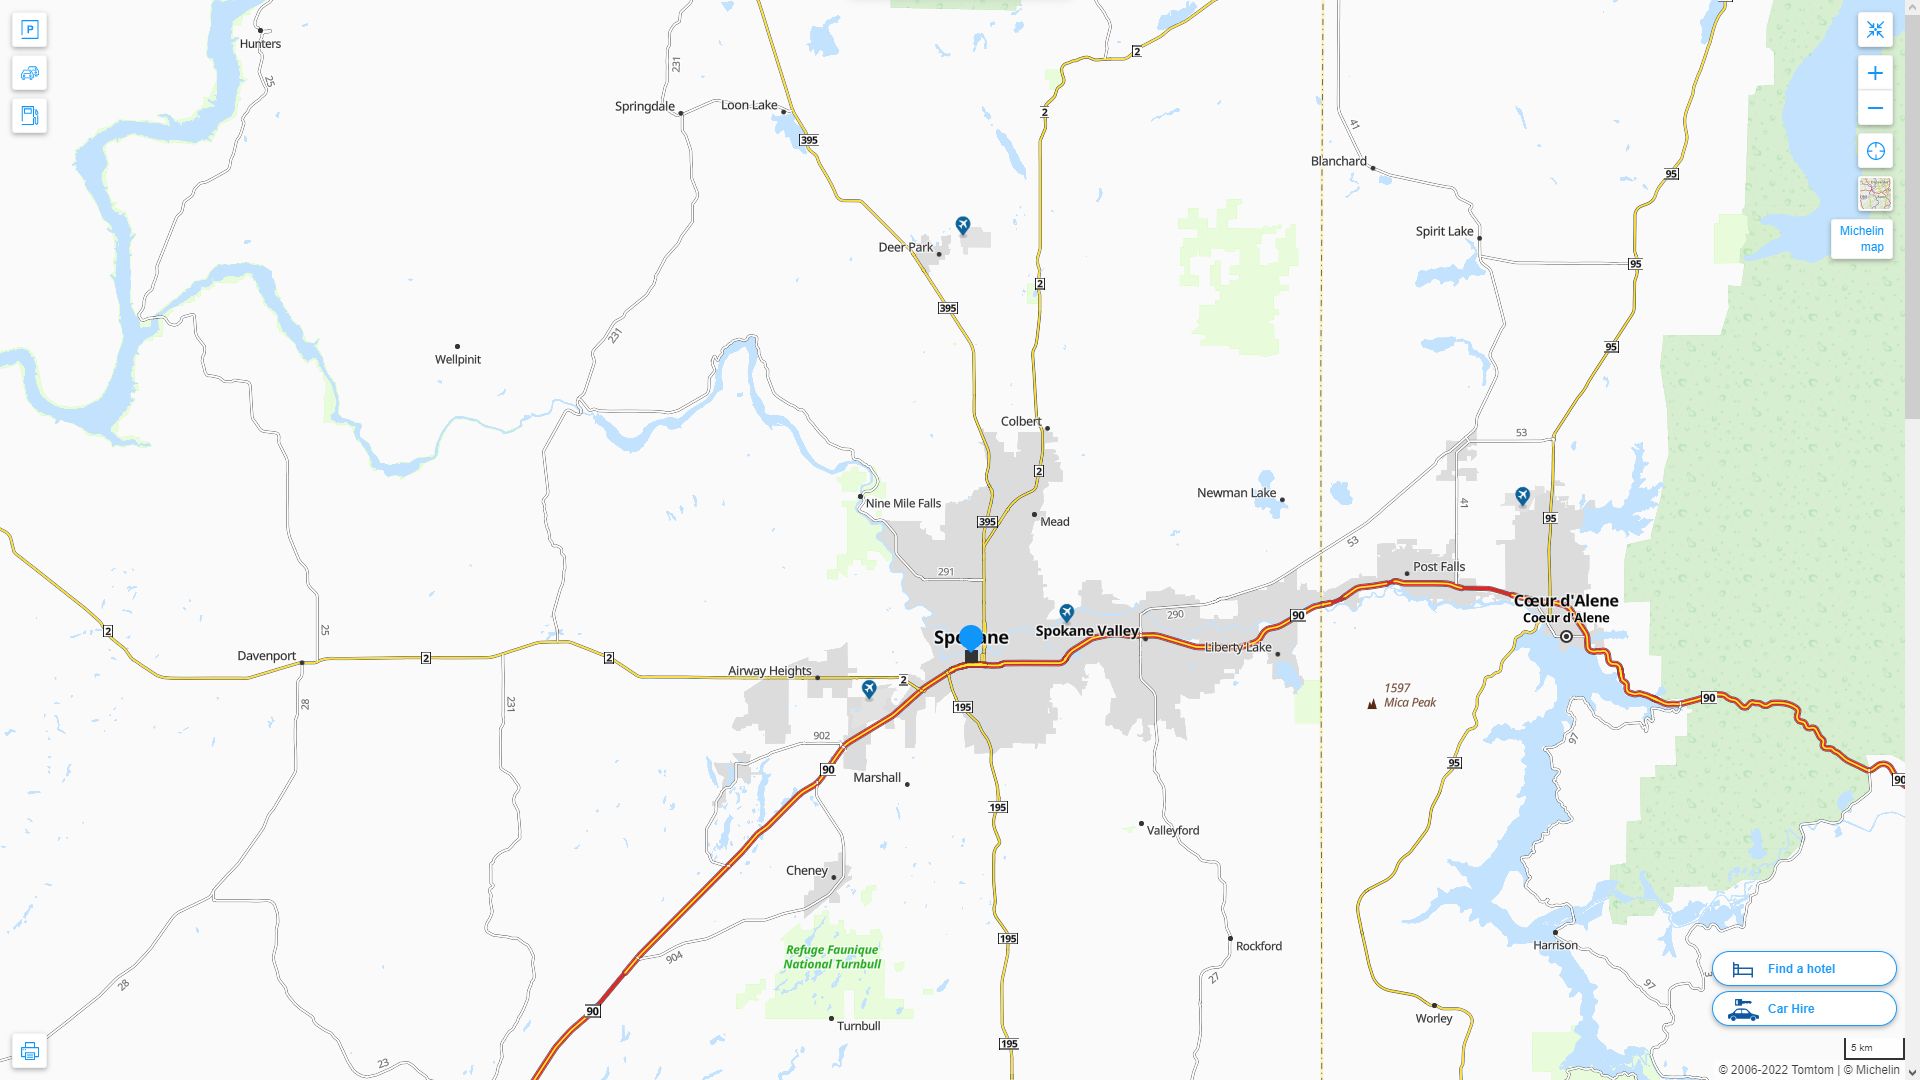 Spokane Washington Highway and Road Map